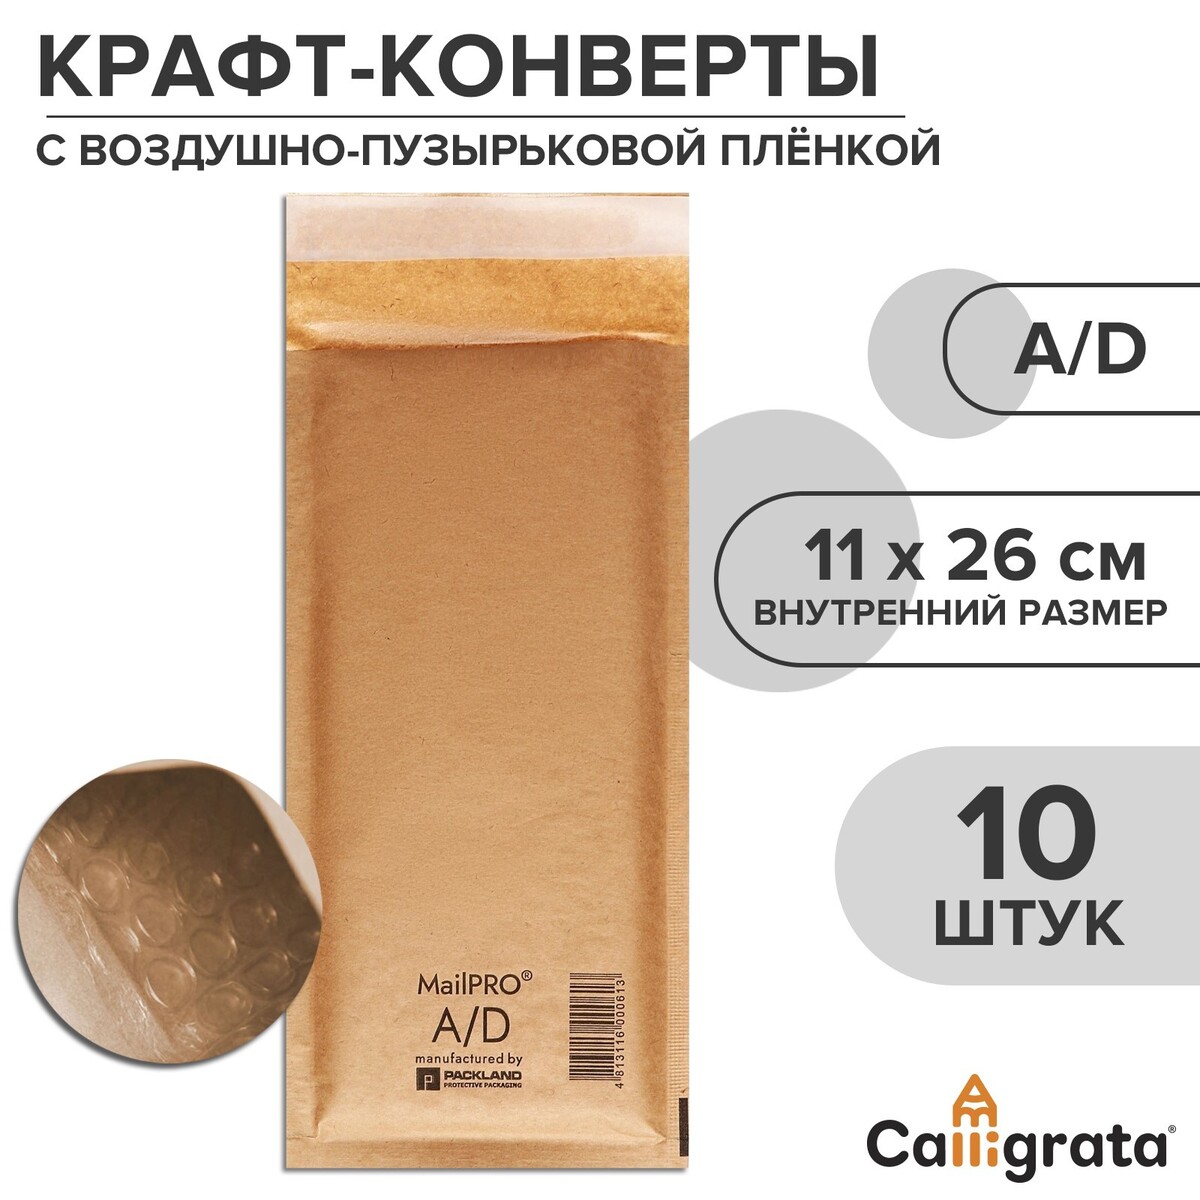 Набор крафт-конвертов с воздушно-пузырьковой пленкой mailpro a/d, 11 х 26 см, 10 штук, kraft